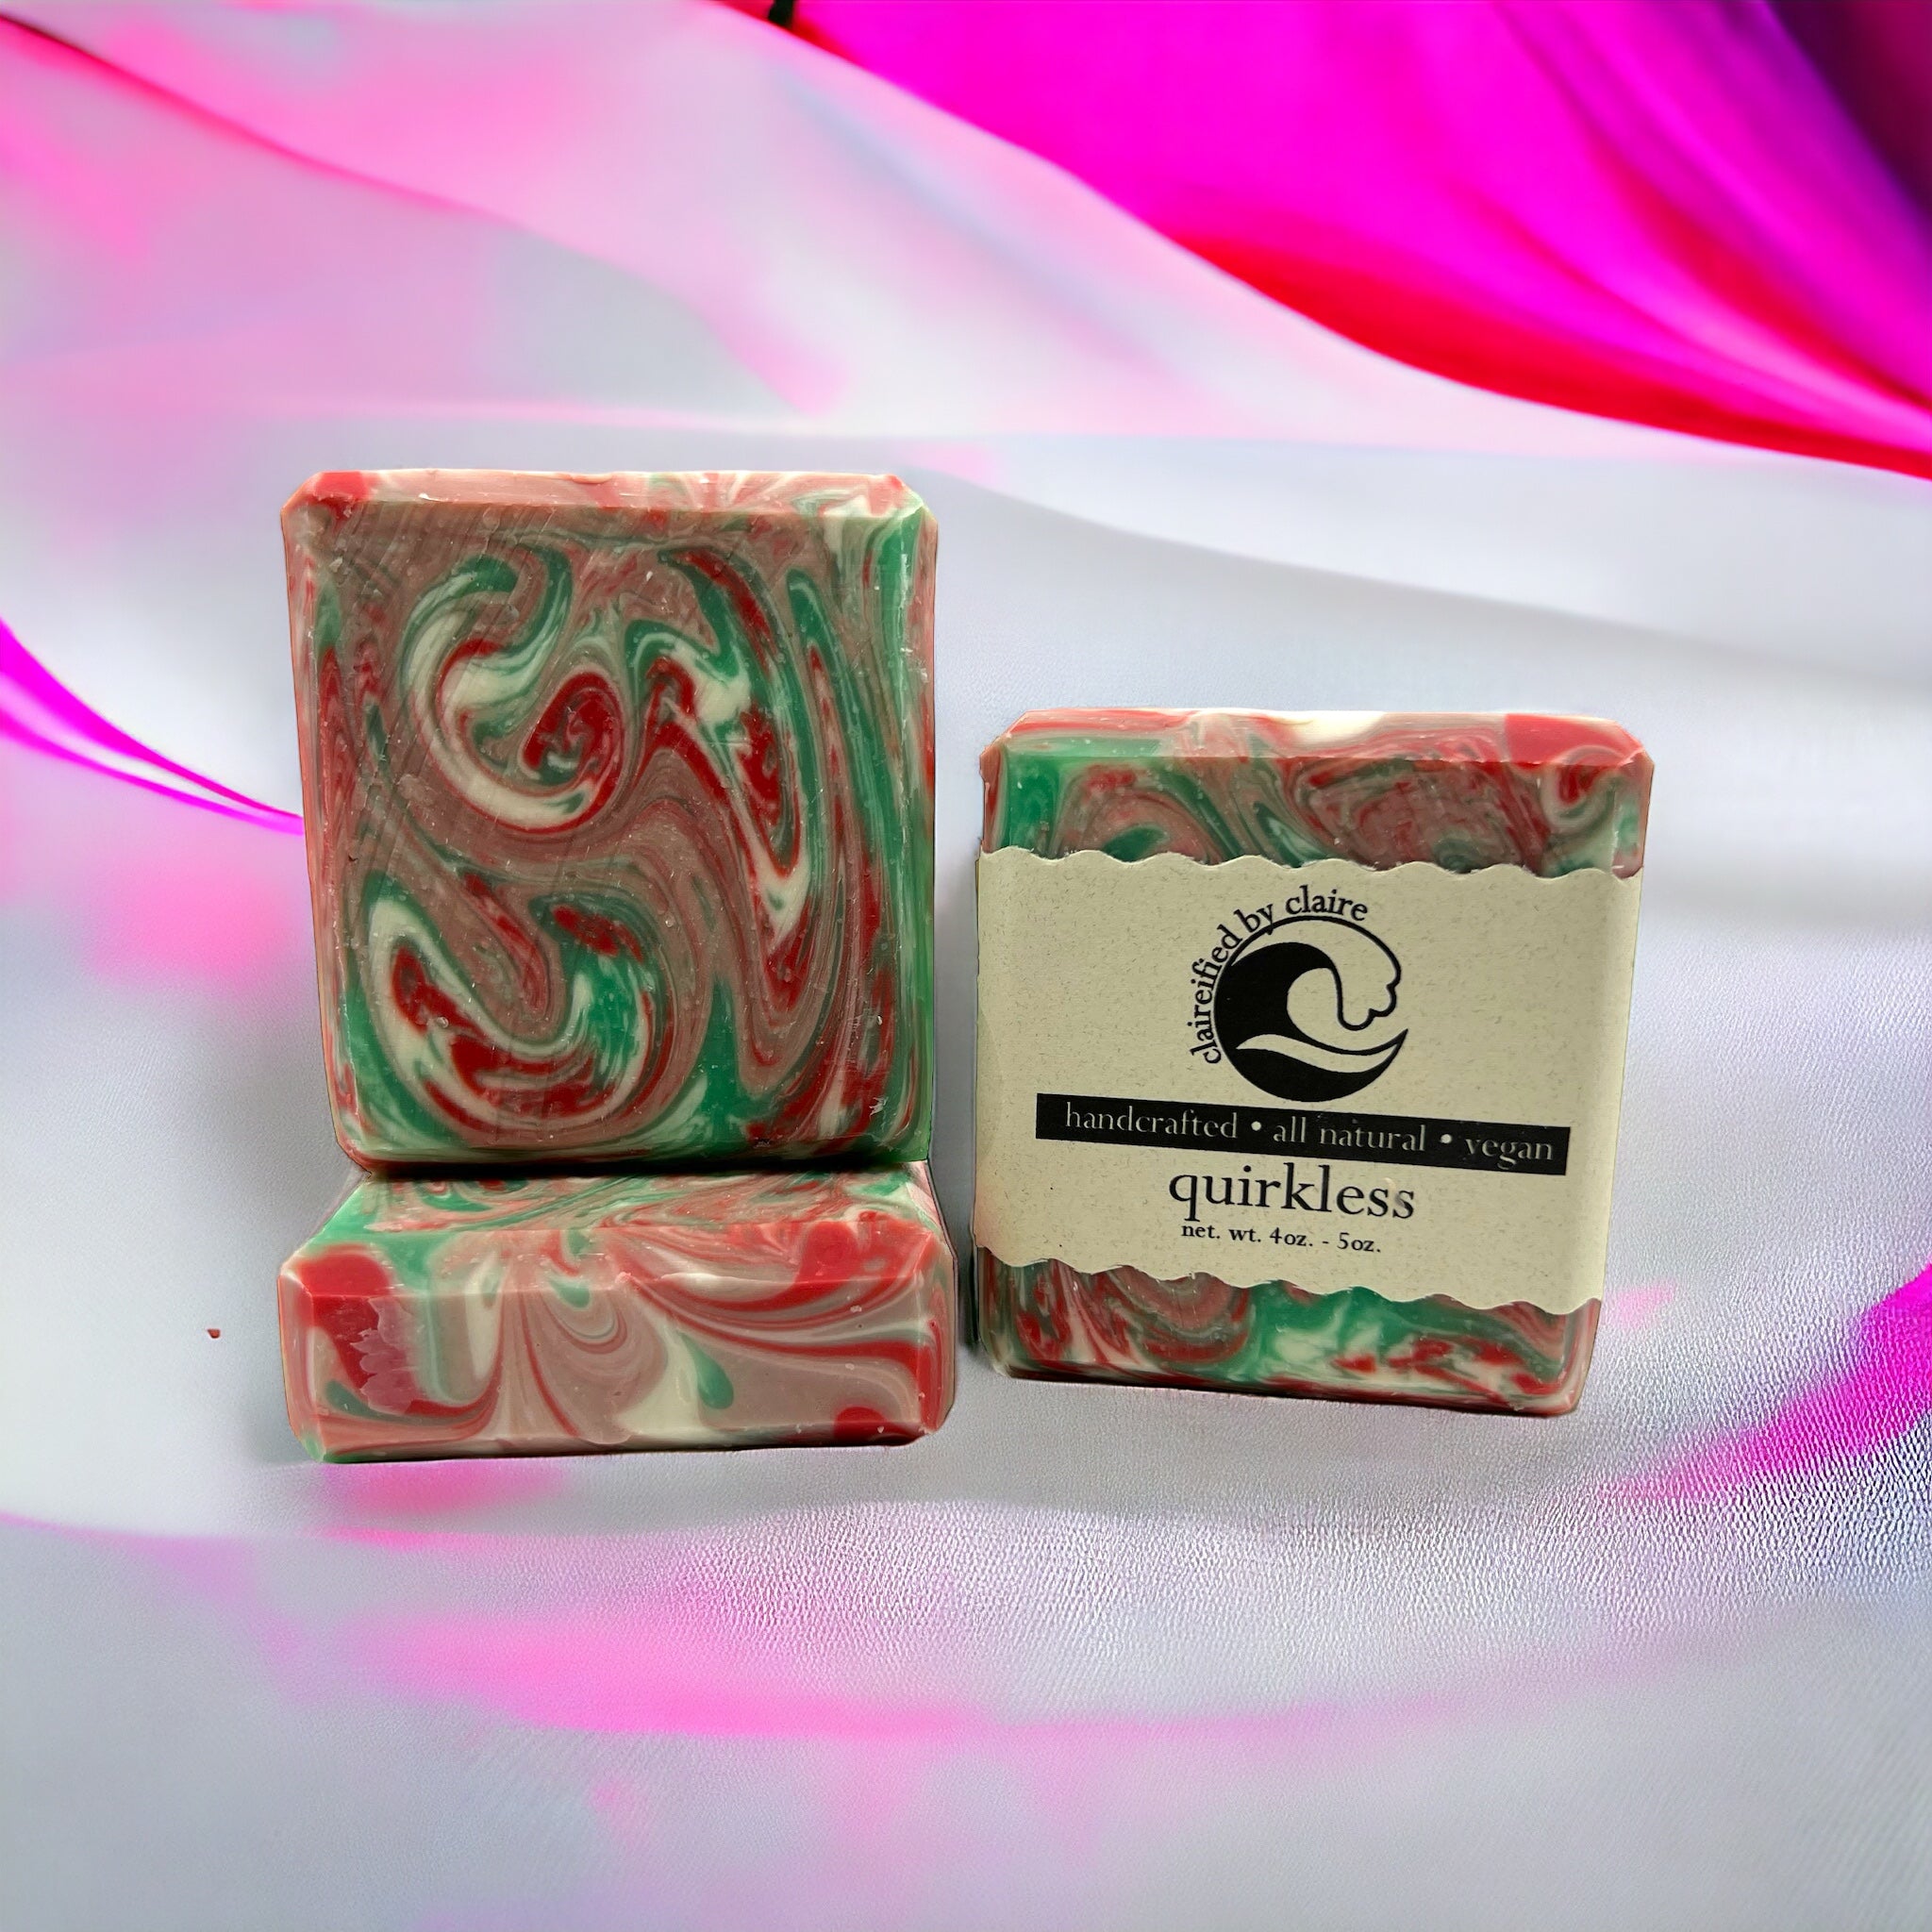 quirkless: Izuku Midoria from My Hero inspired handmade soap